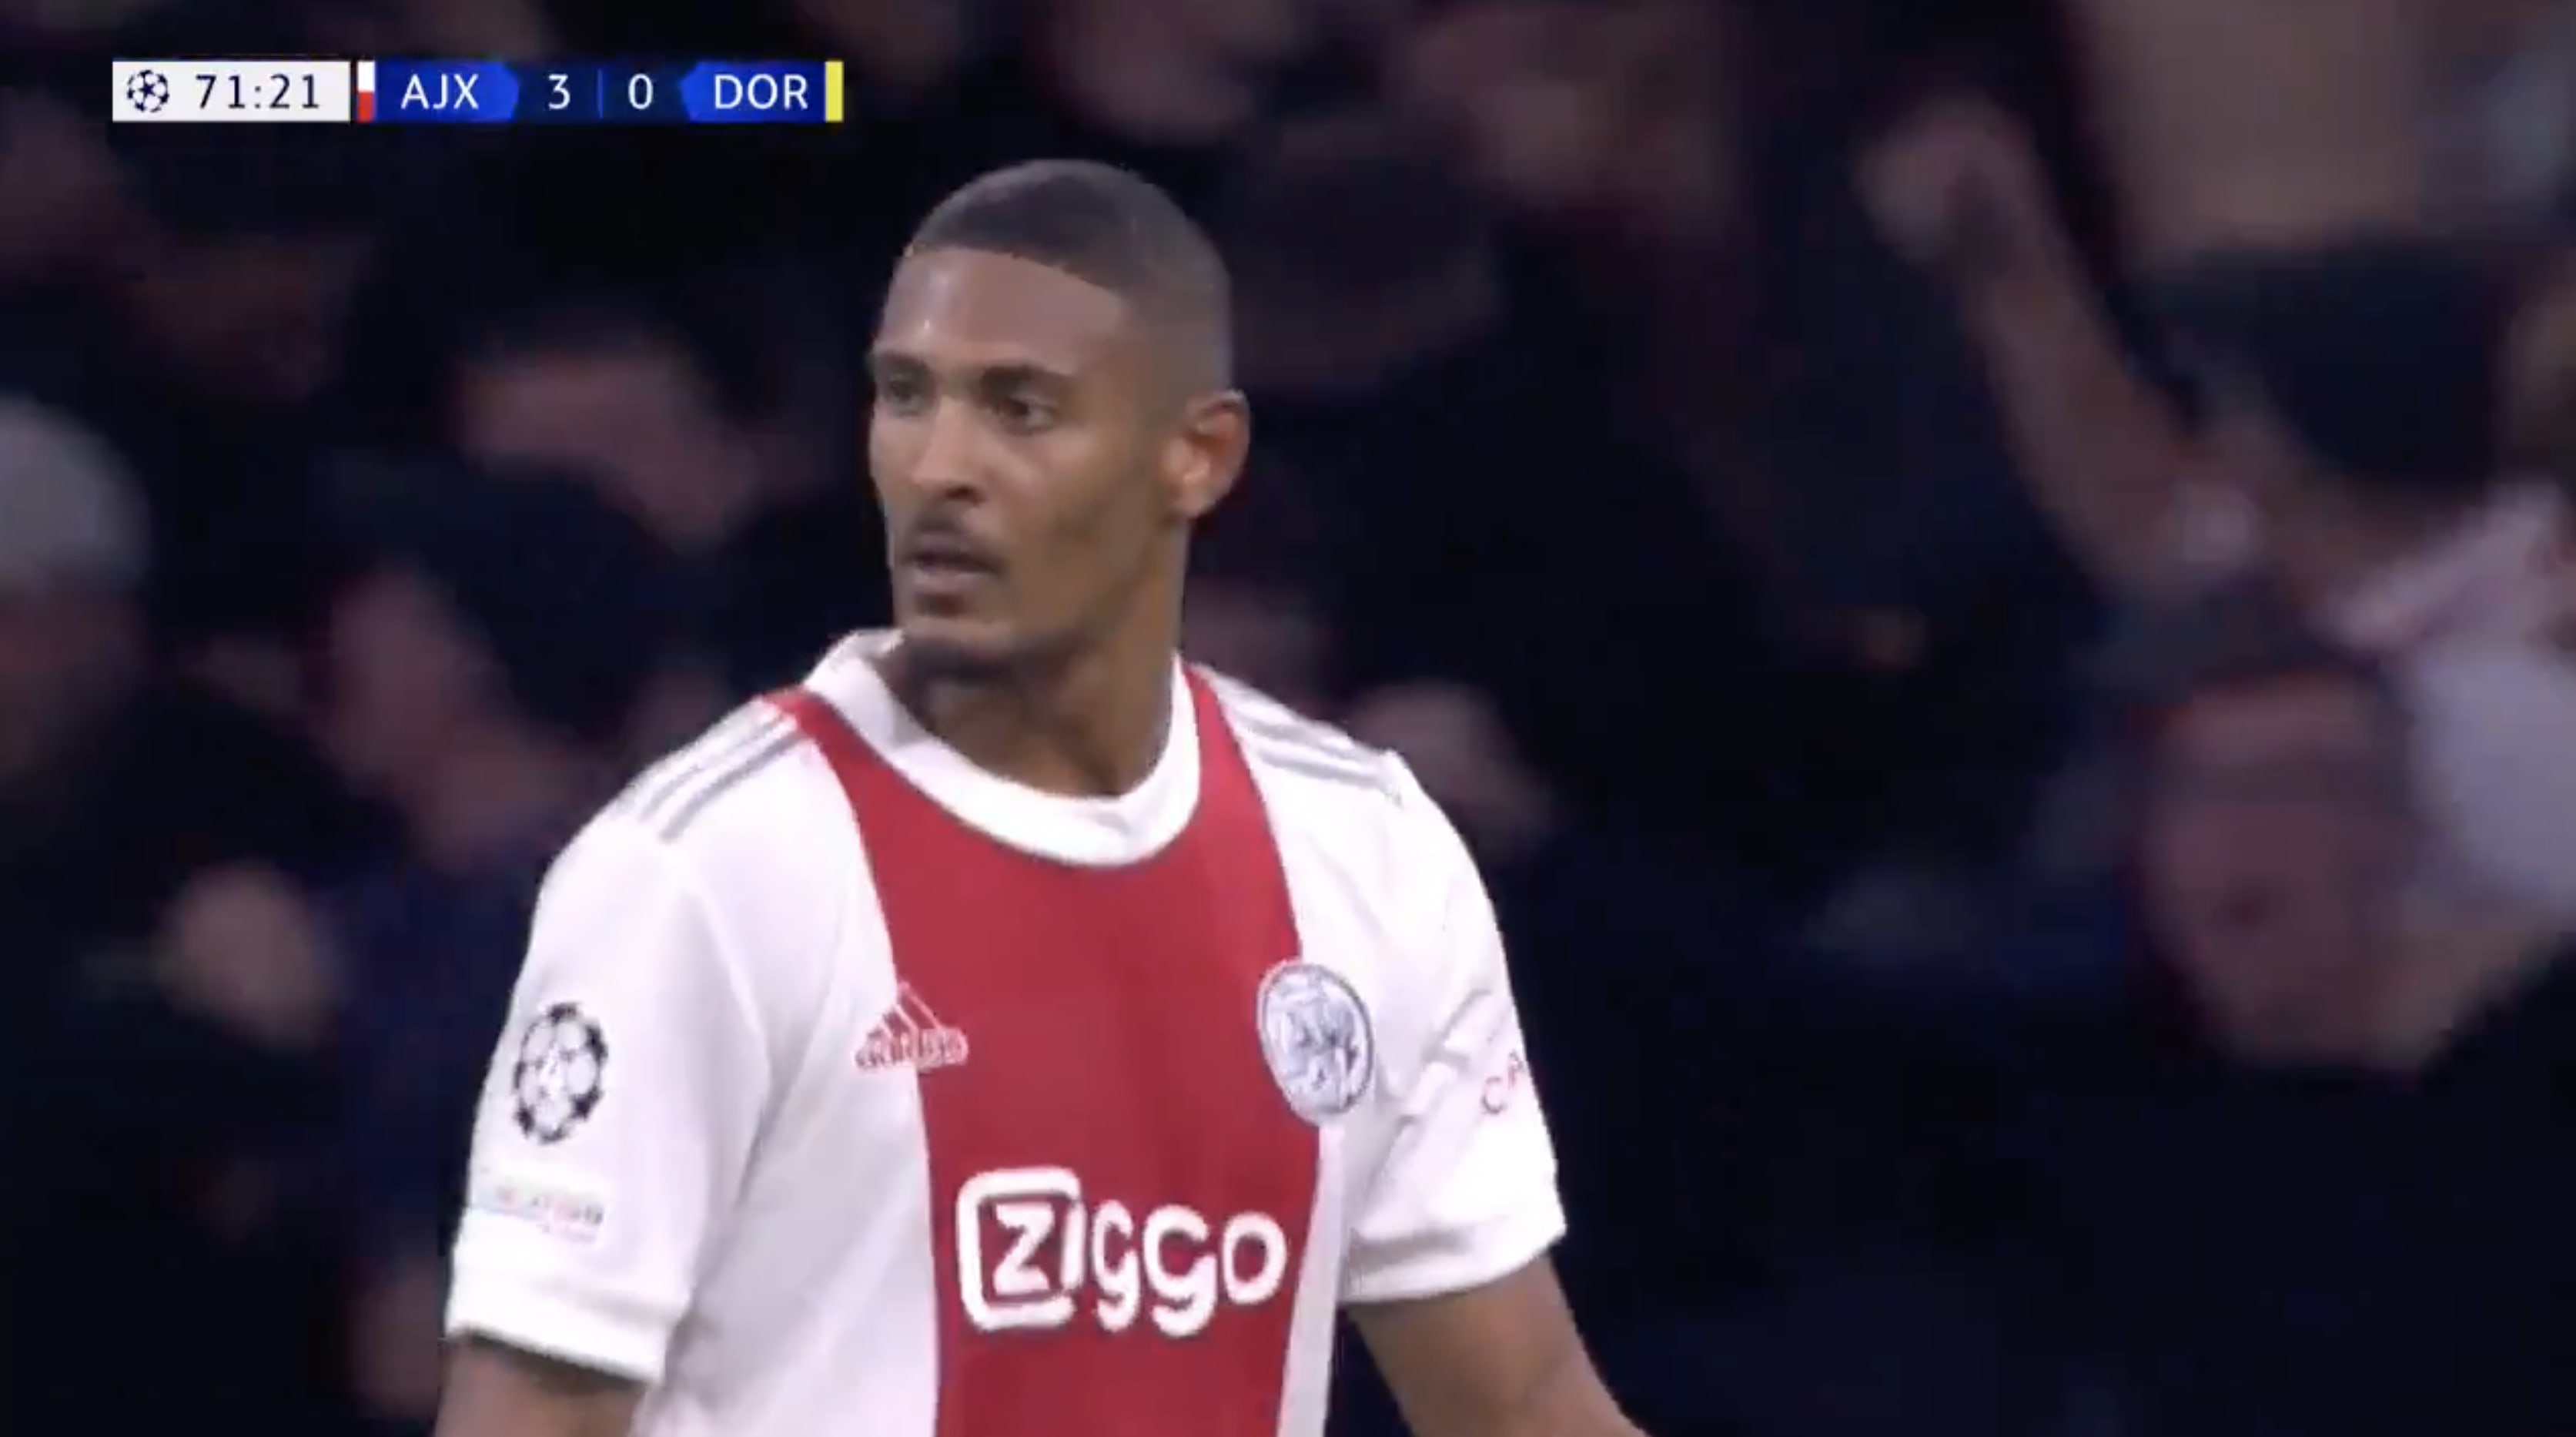 VIDEOGOAL: Haller kopt de 4-0 voor Ajax binnen